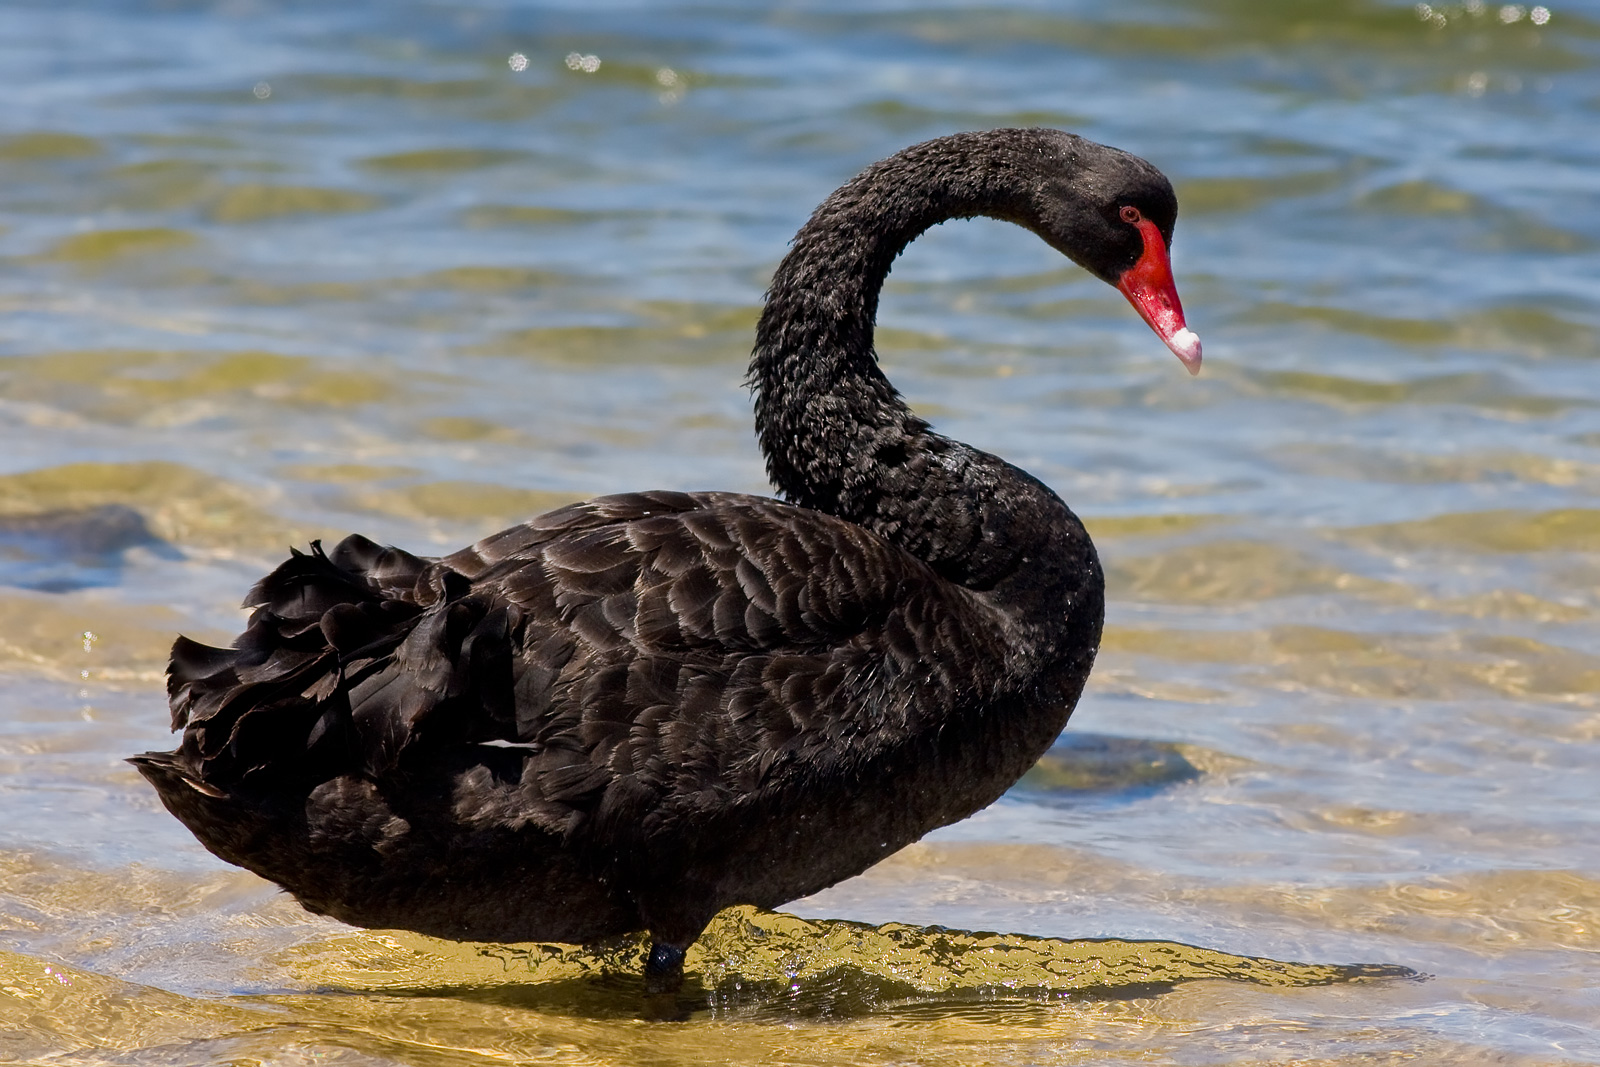 Black_Swan_bg